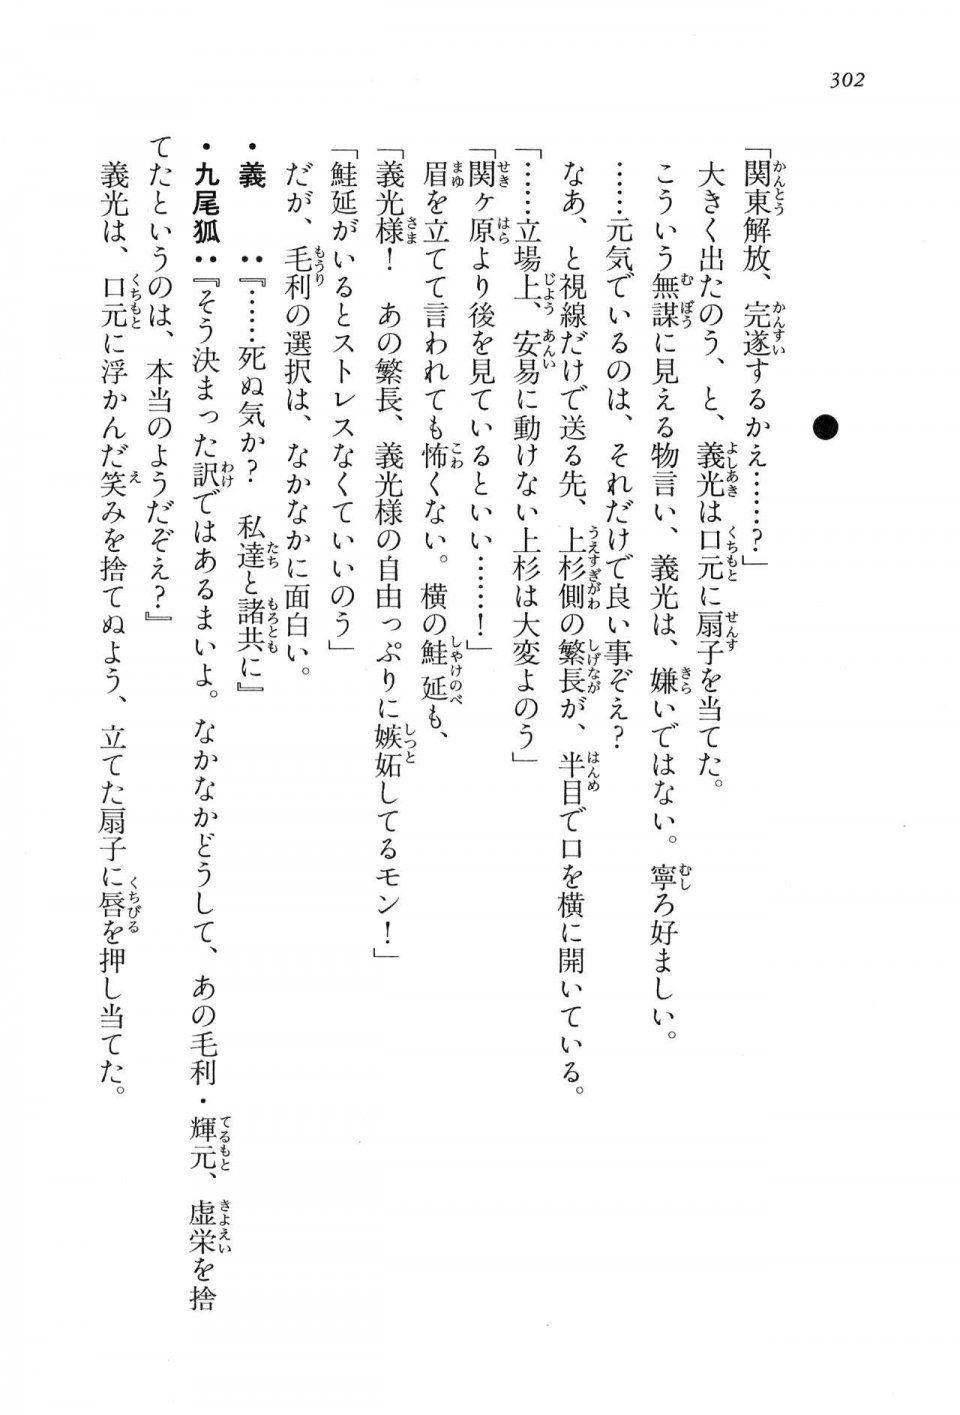 Kyoukai Senjou no Horizon LN Vol 16(7A) - Photo #302